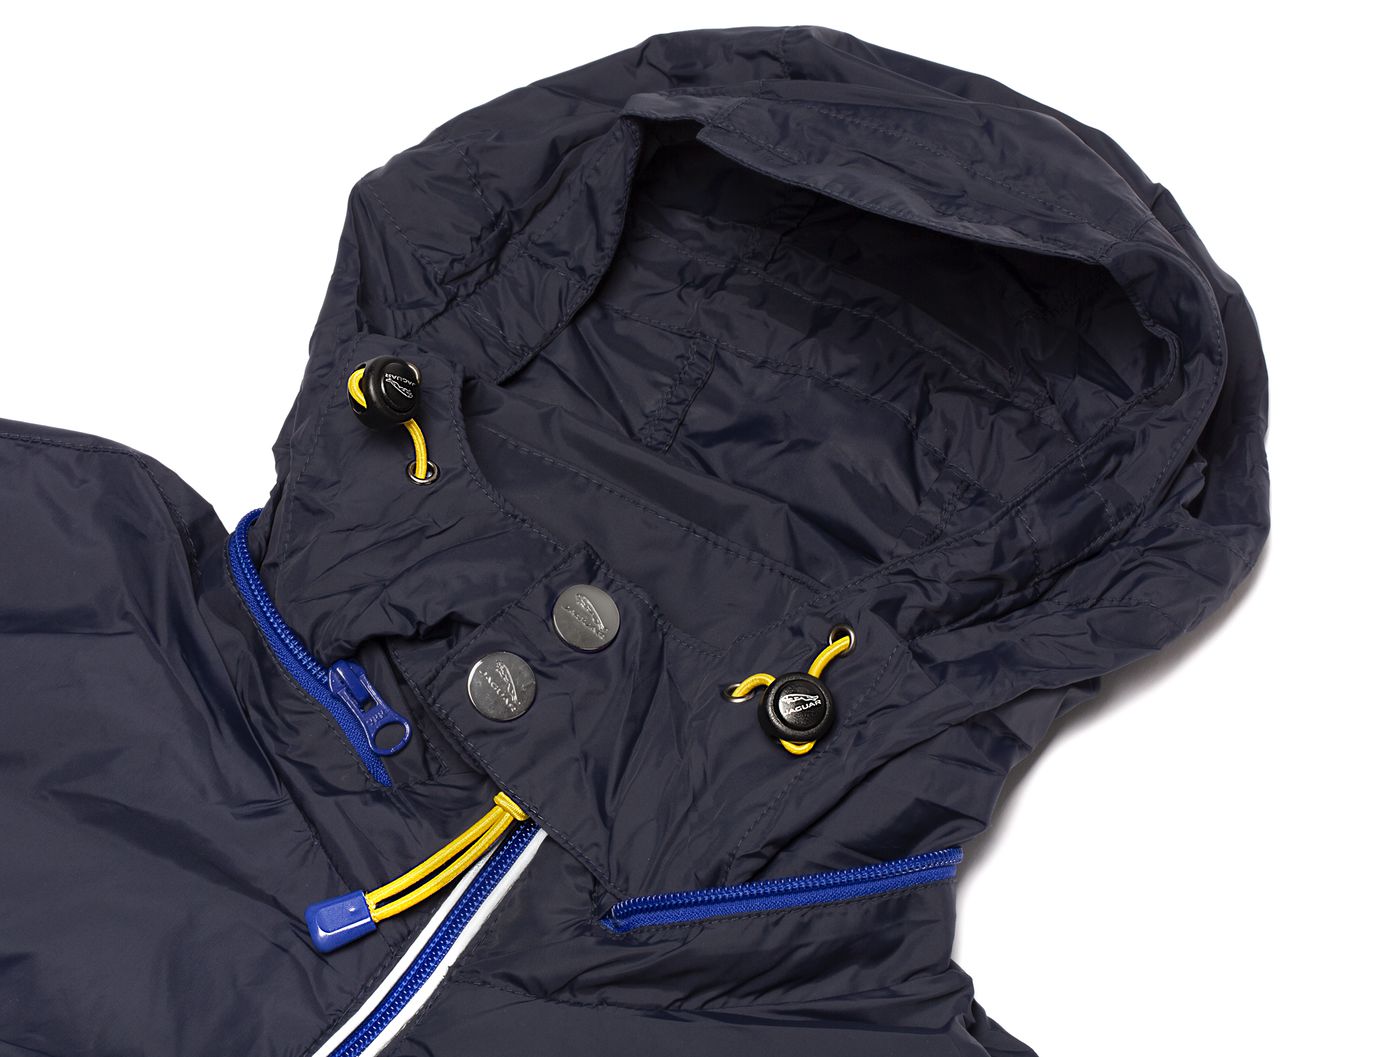 Regenjacke
Waterproof jacket
Veste imperméable